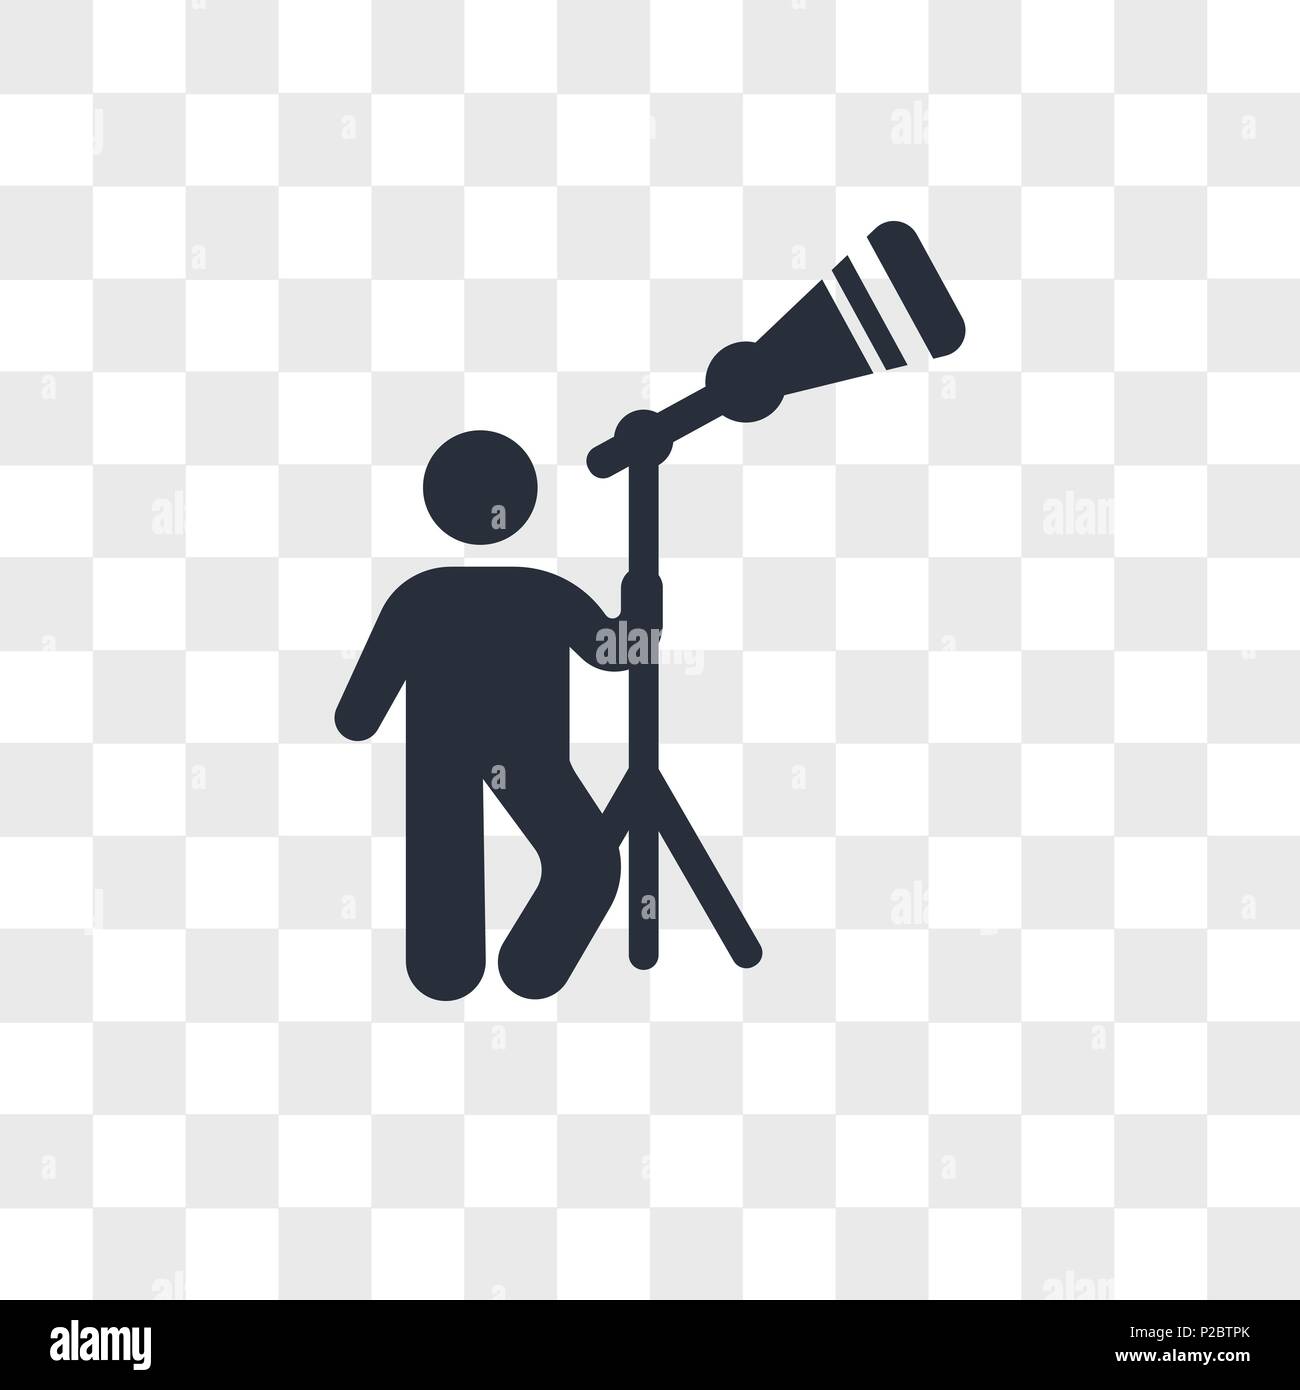 Mann durch ein Teleskop vektor Icon auf transparentem Hintergrund suchen,  Menschen auf der Suche nach einem Teleskop logo Konzept Stock-Vektorgrafik  - Alamy